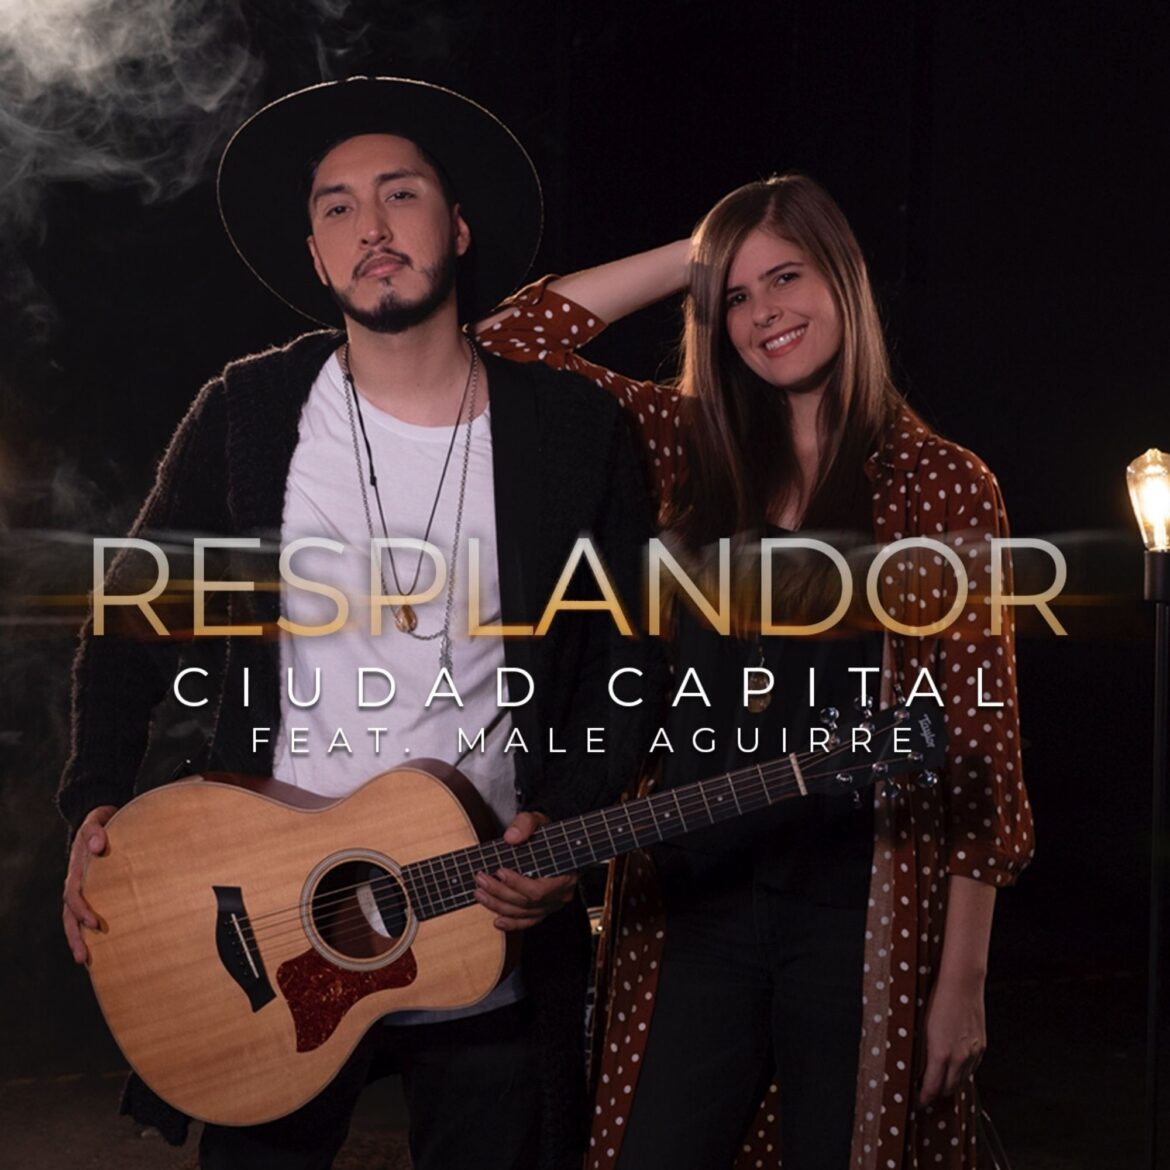 La agrupación colombiana Ciudad Capital presenta el primer sencillo de su nuevo álbum “Resplandor” junto a Male Aguirre